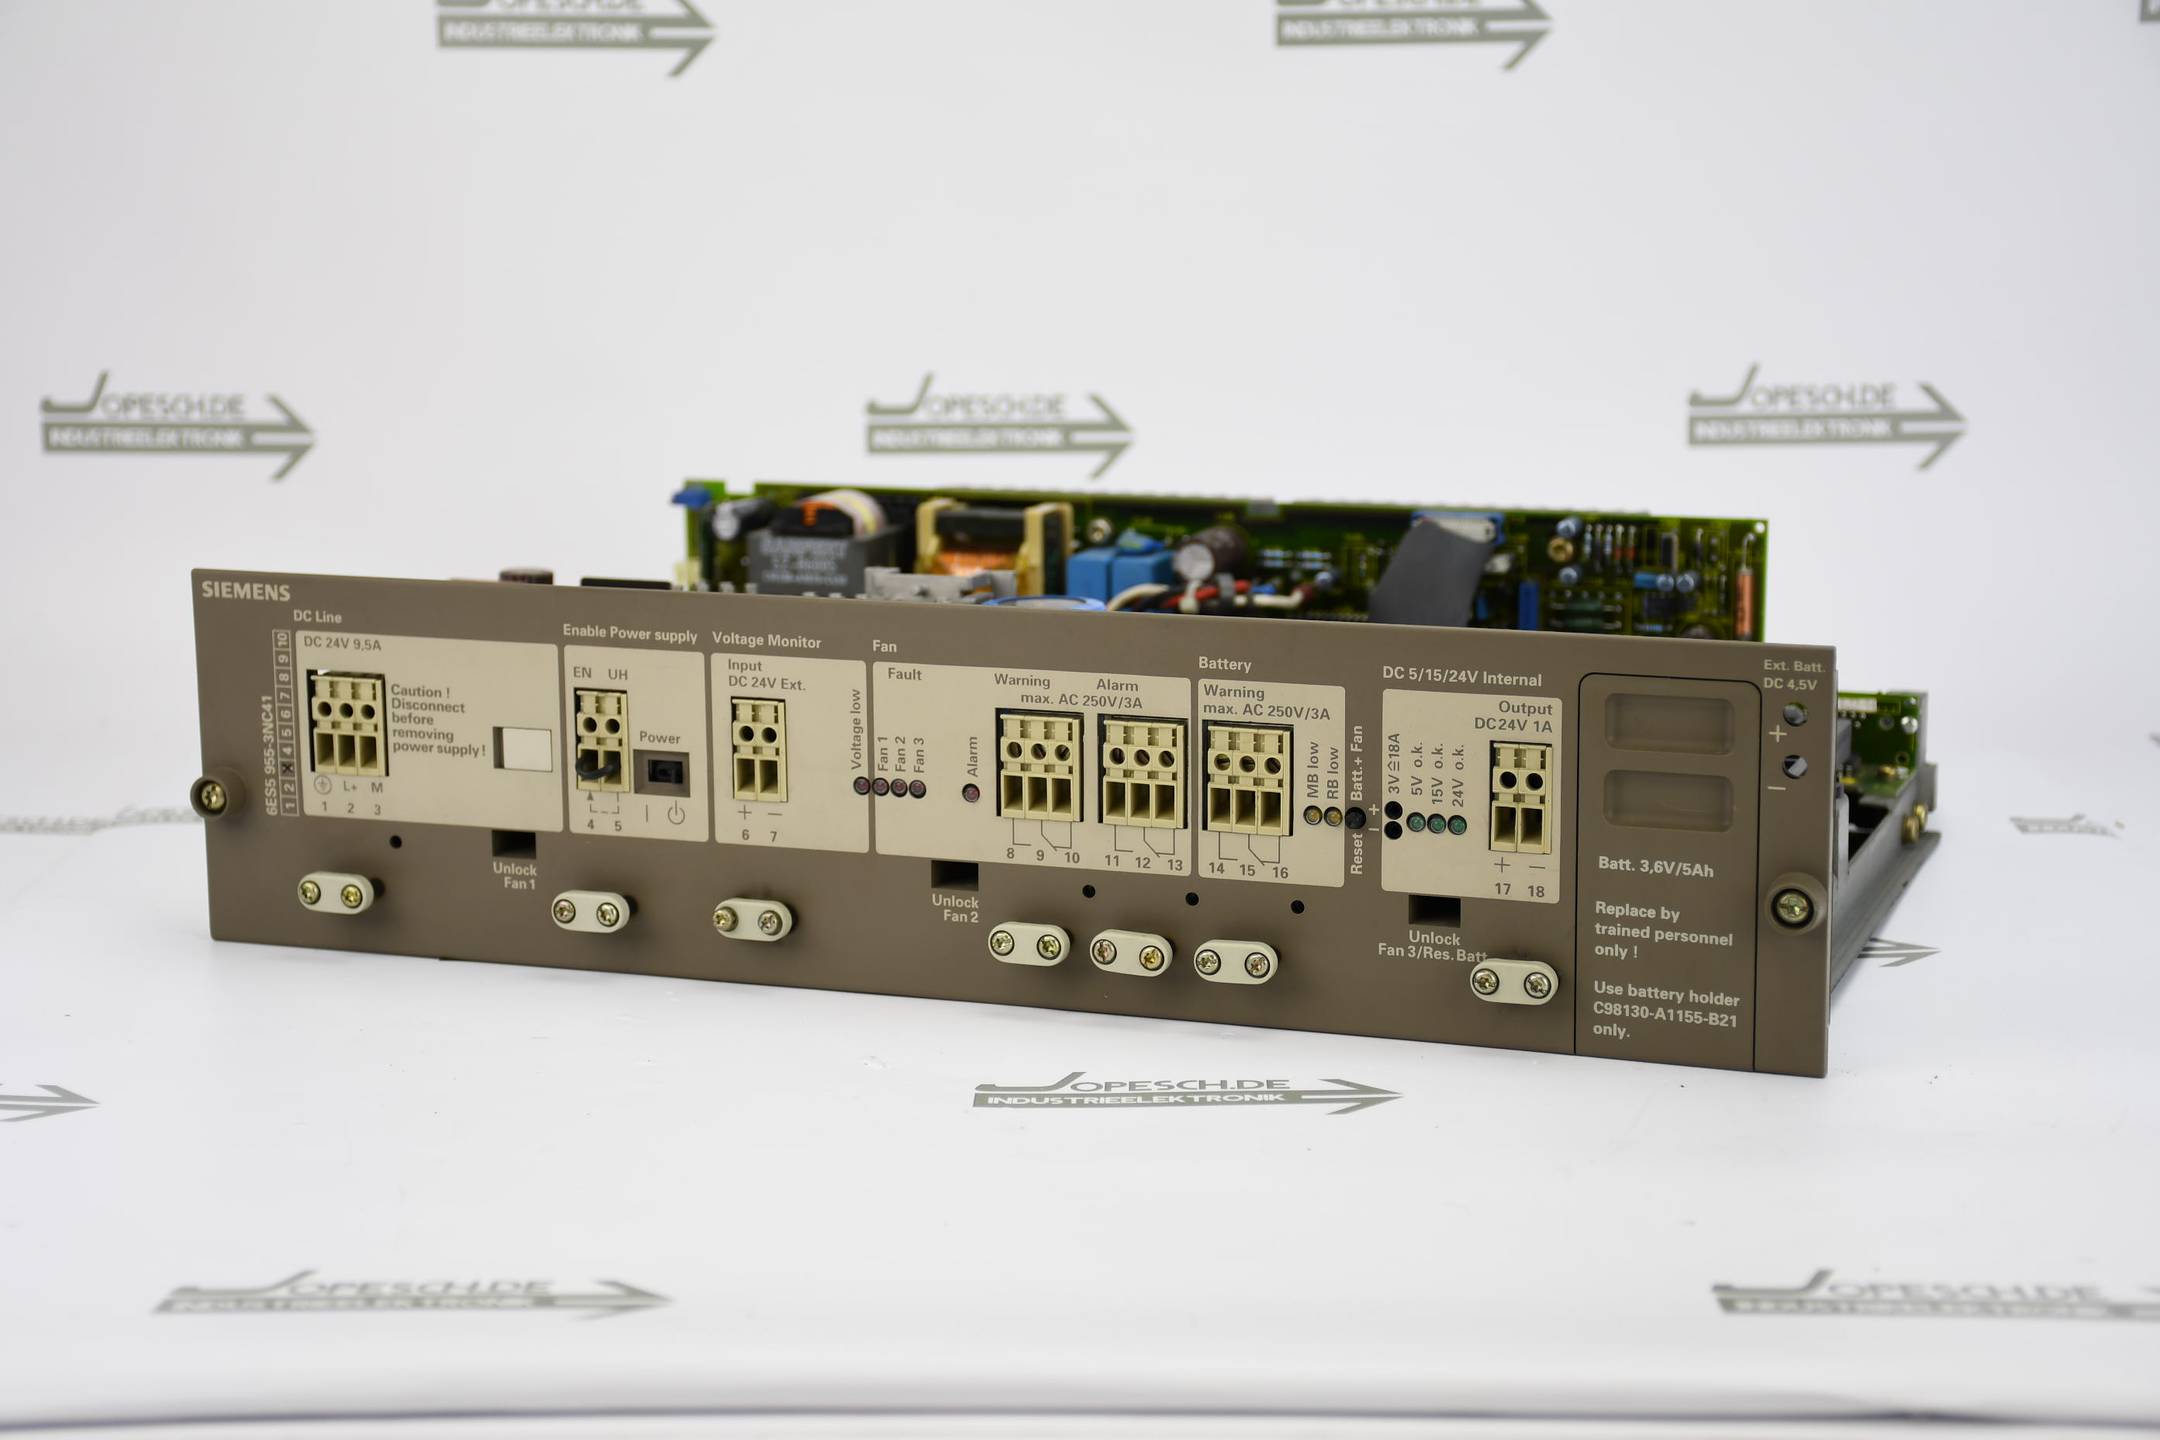 Siemens simatic S5 955 Power S5-135U/155U 6ES5 955-3NC41 ( 6ES5955-3NC41 ) E3